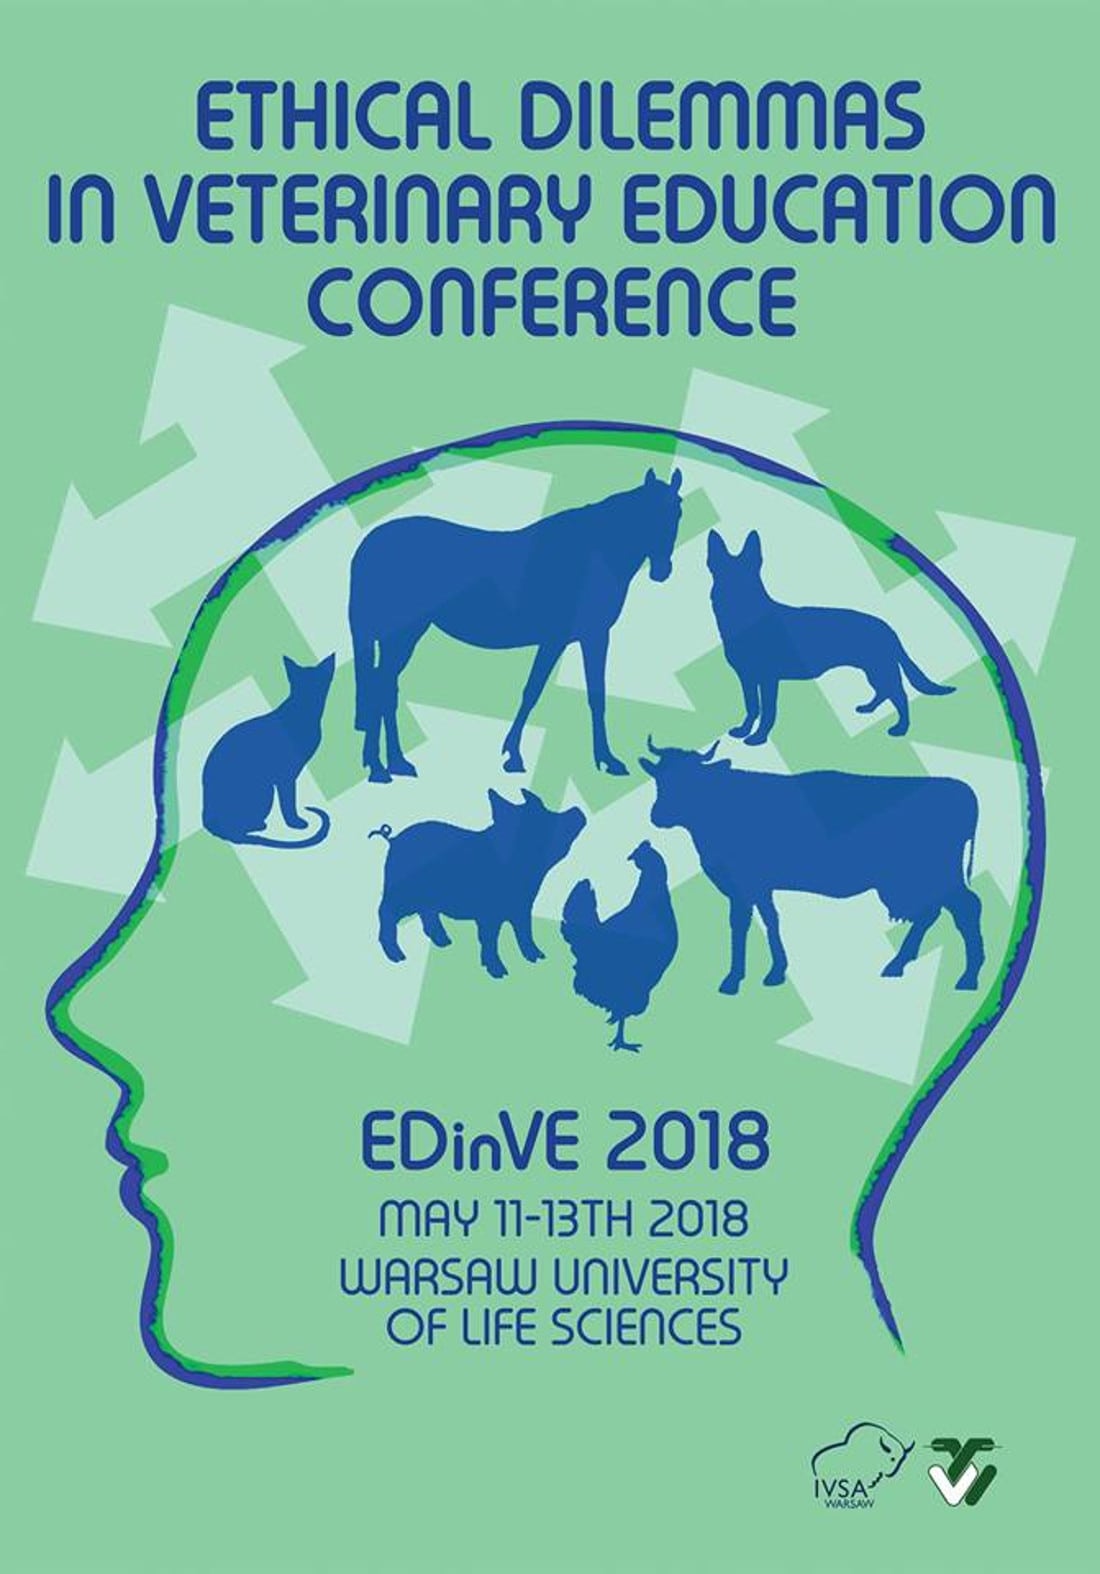 Konferencja odbędzie się w dniach 11-13 maja 2018 roku.